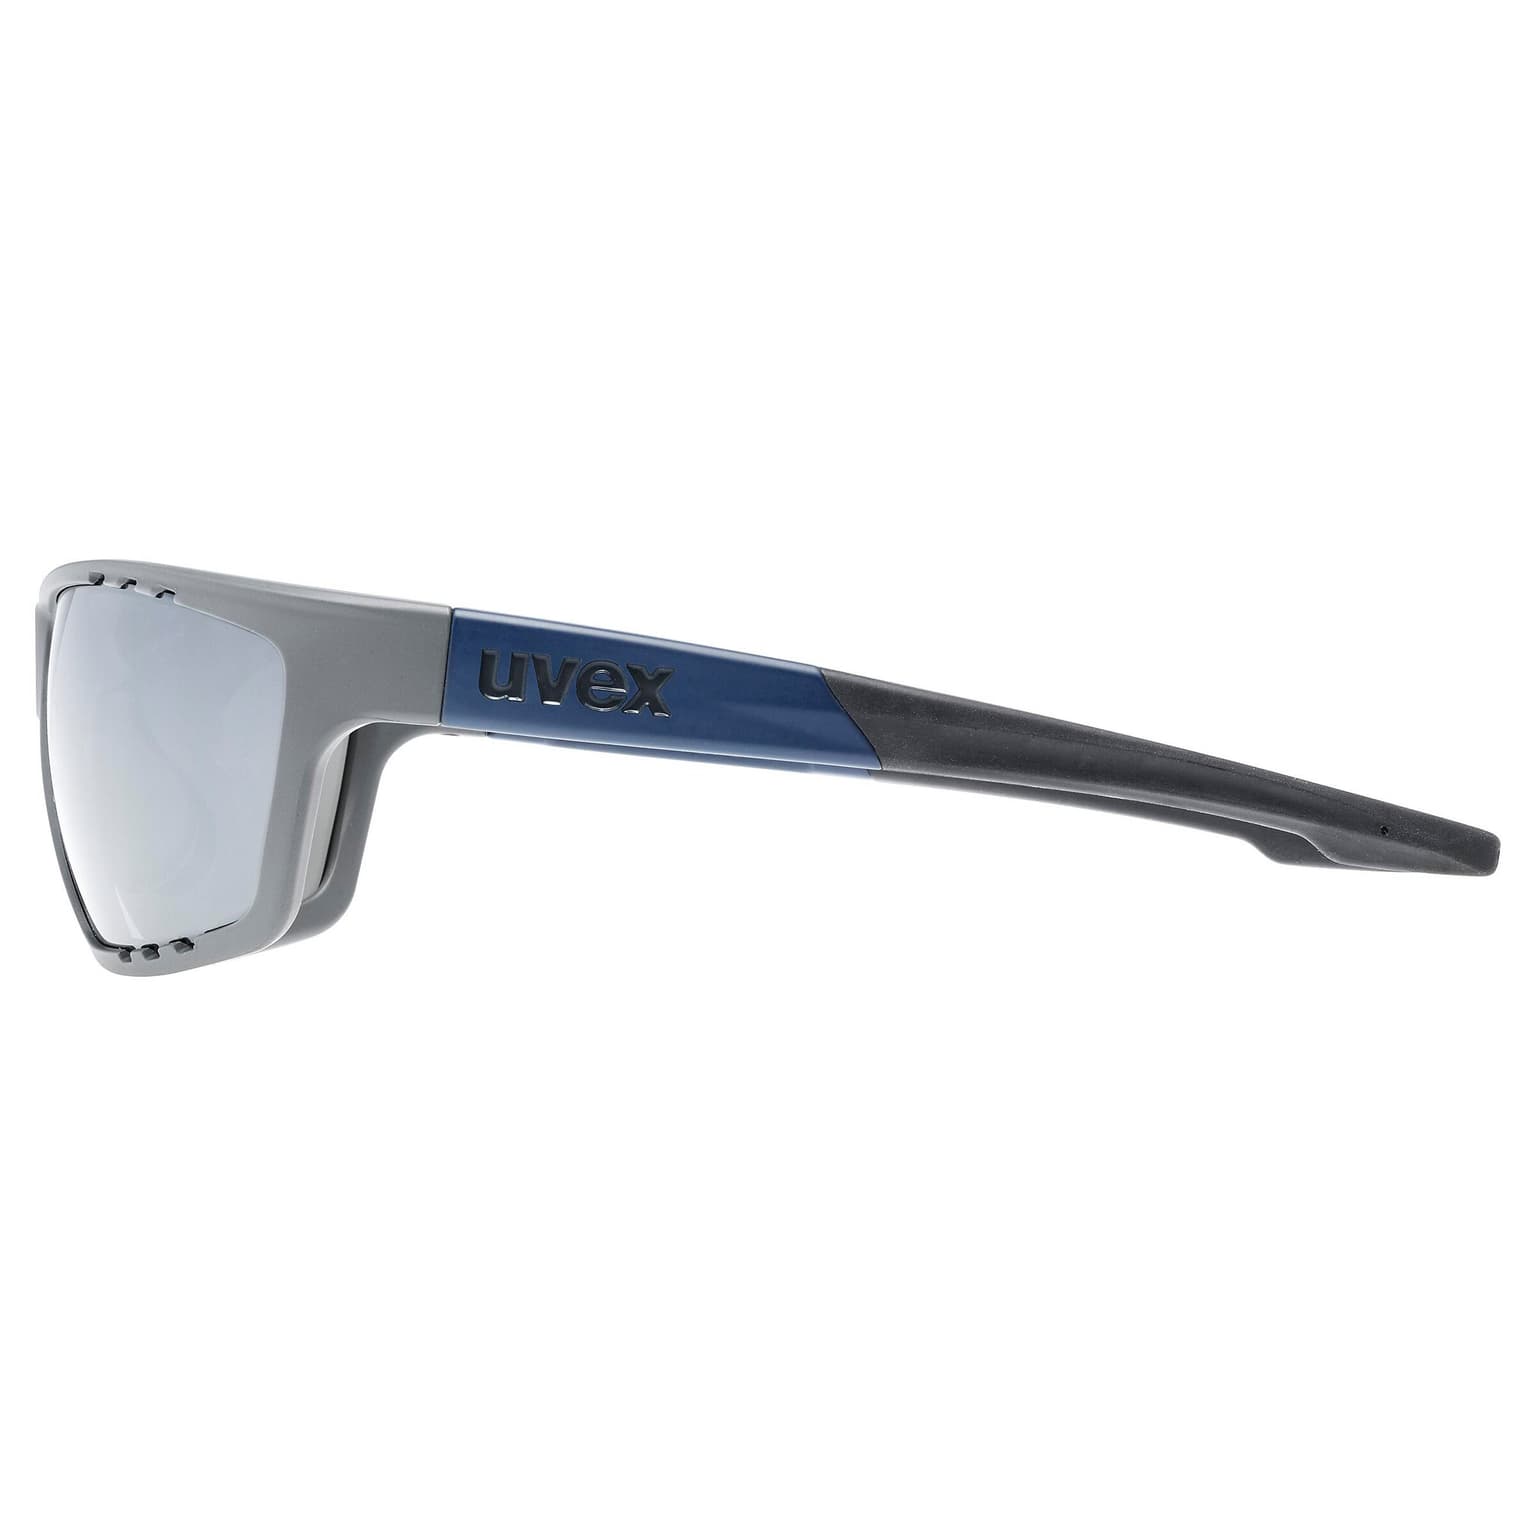 Uvex Uvex Allround Sportbrille grigio-chiaro 2